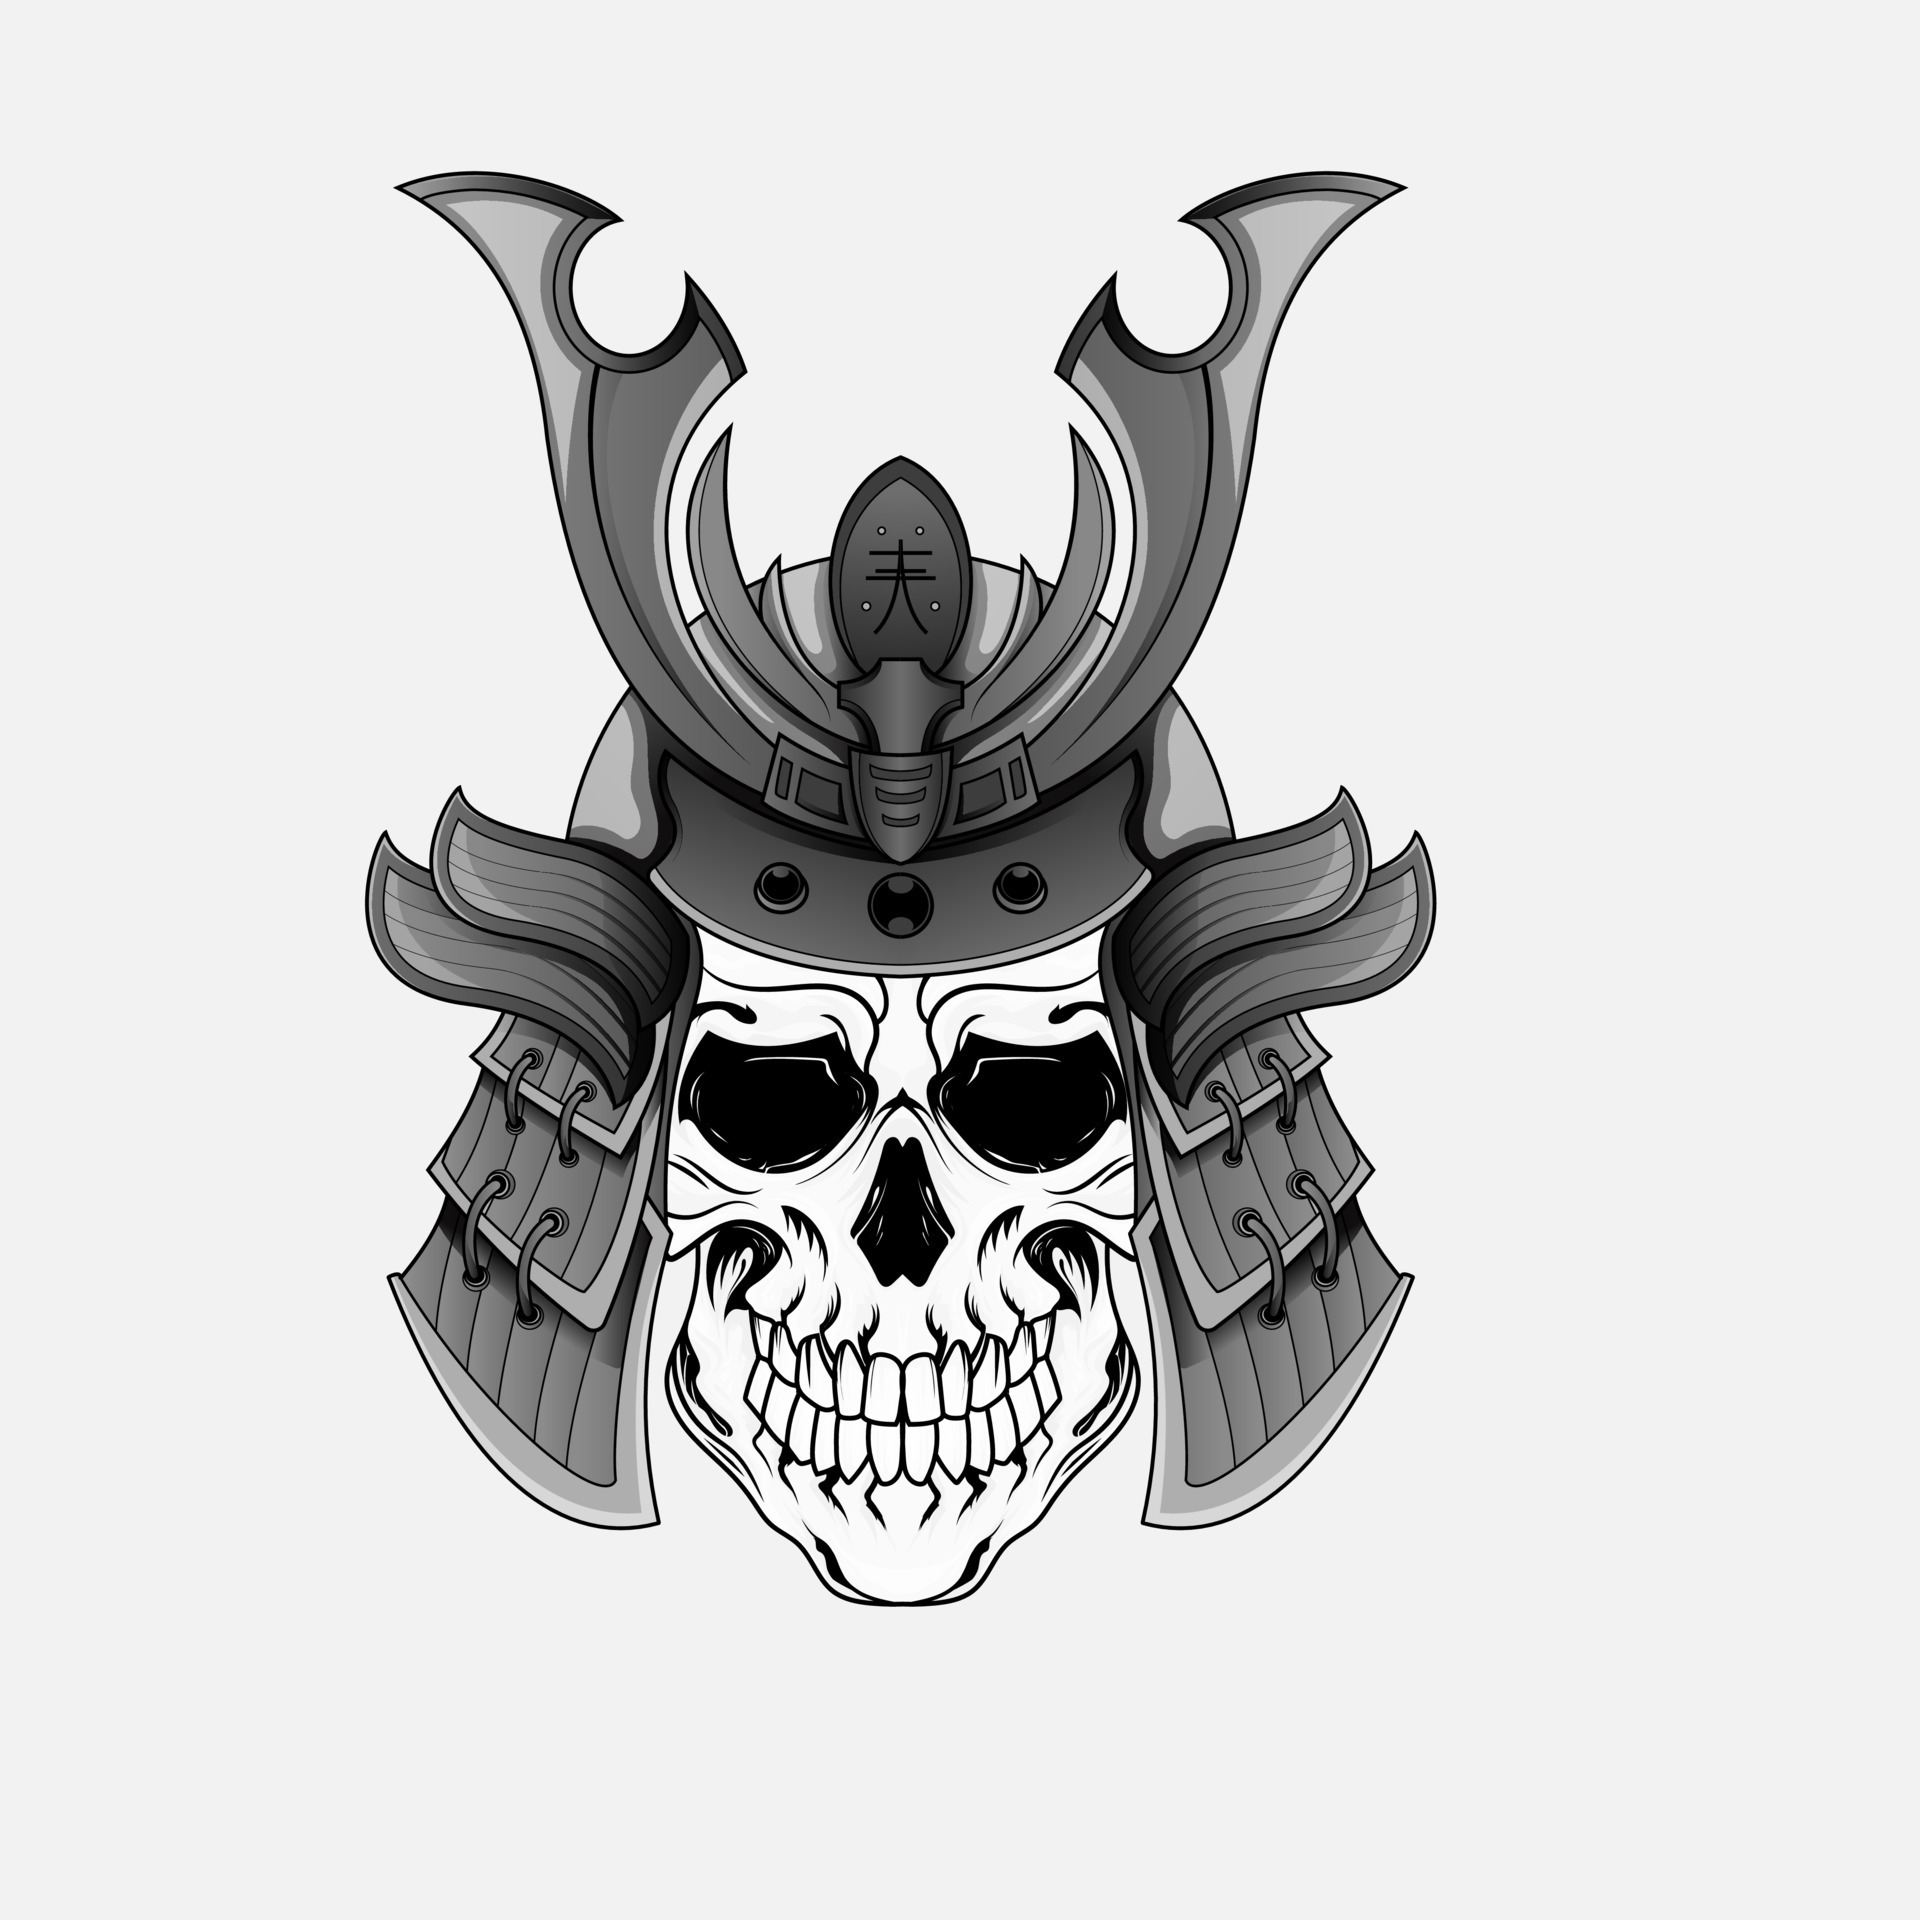 tatuagem de caveira de guerreiro samurai ou máscara japonesa e ninja  japonês. Cabeça de crânio de guerreiro samurai japonês com espada de  armadura ronin, demônio shogun do exército kamikaze. 14016456 Vetor no